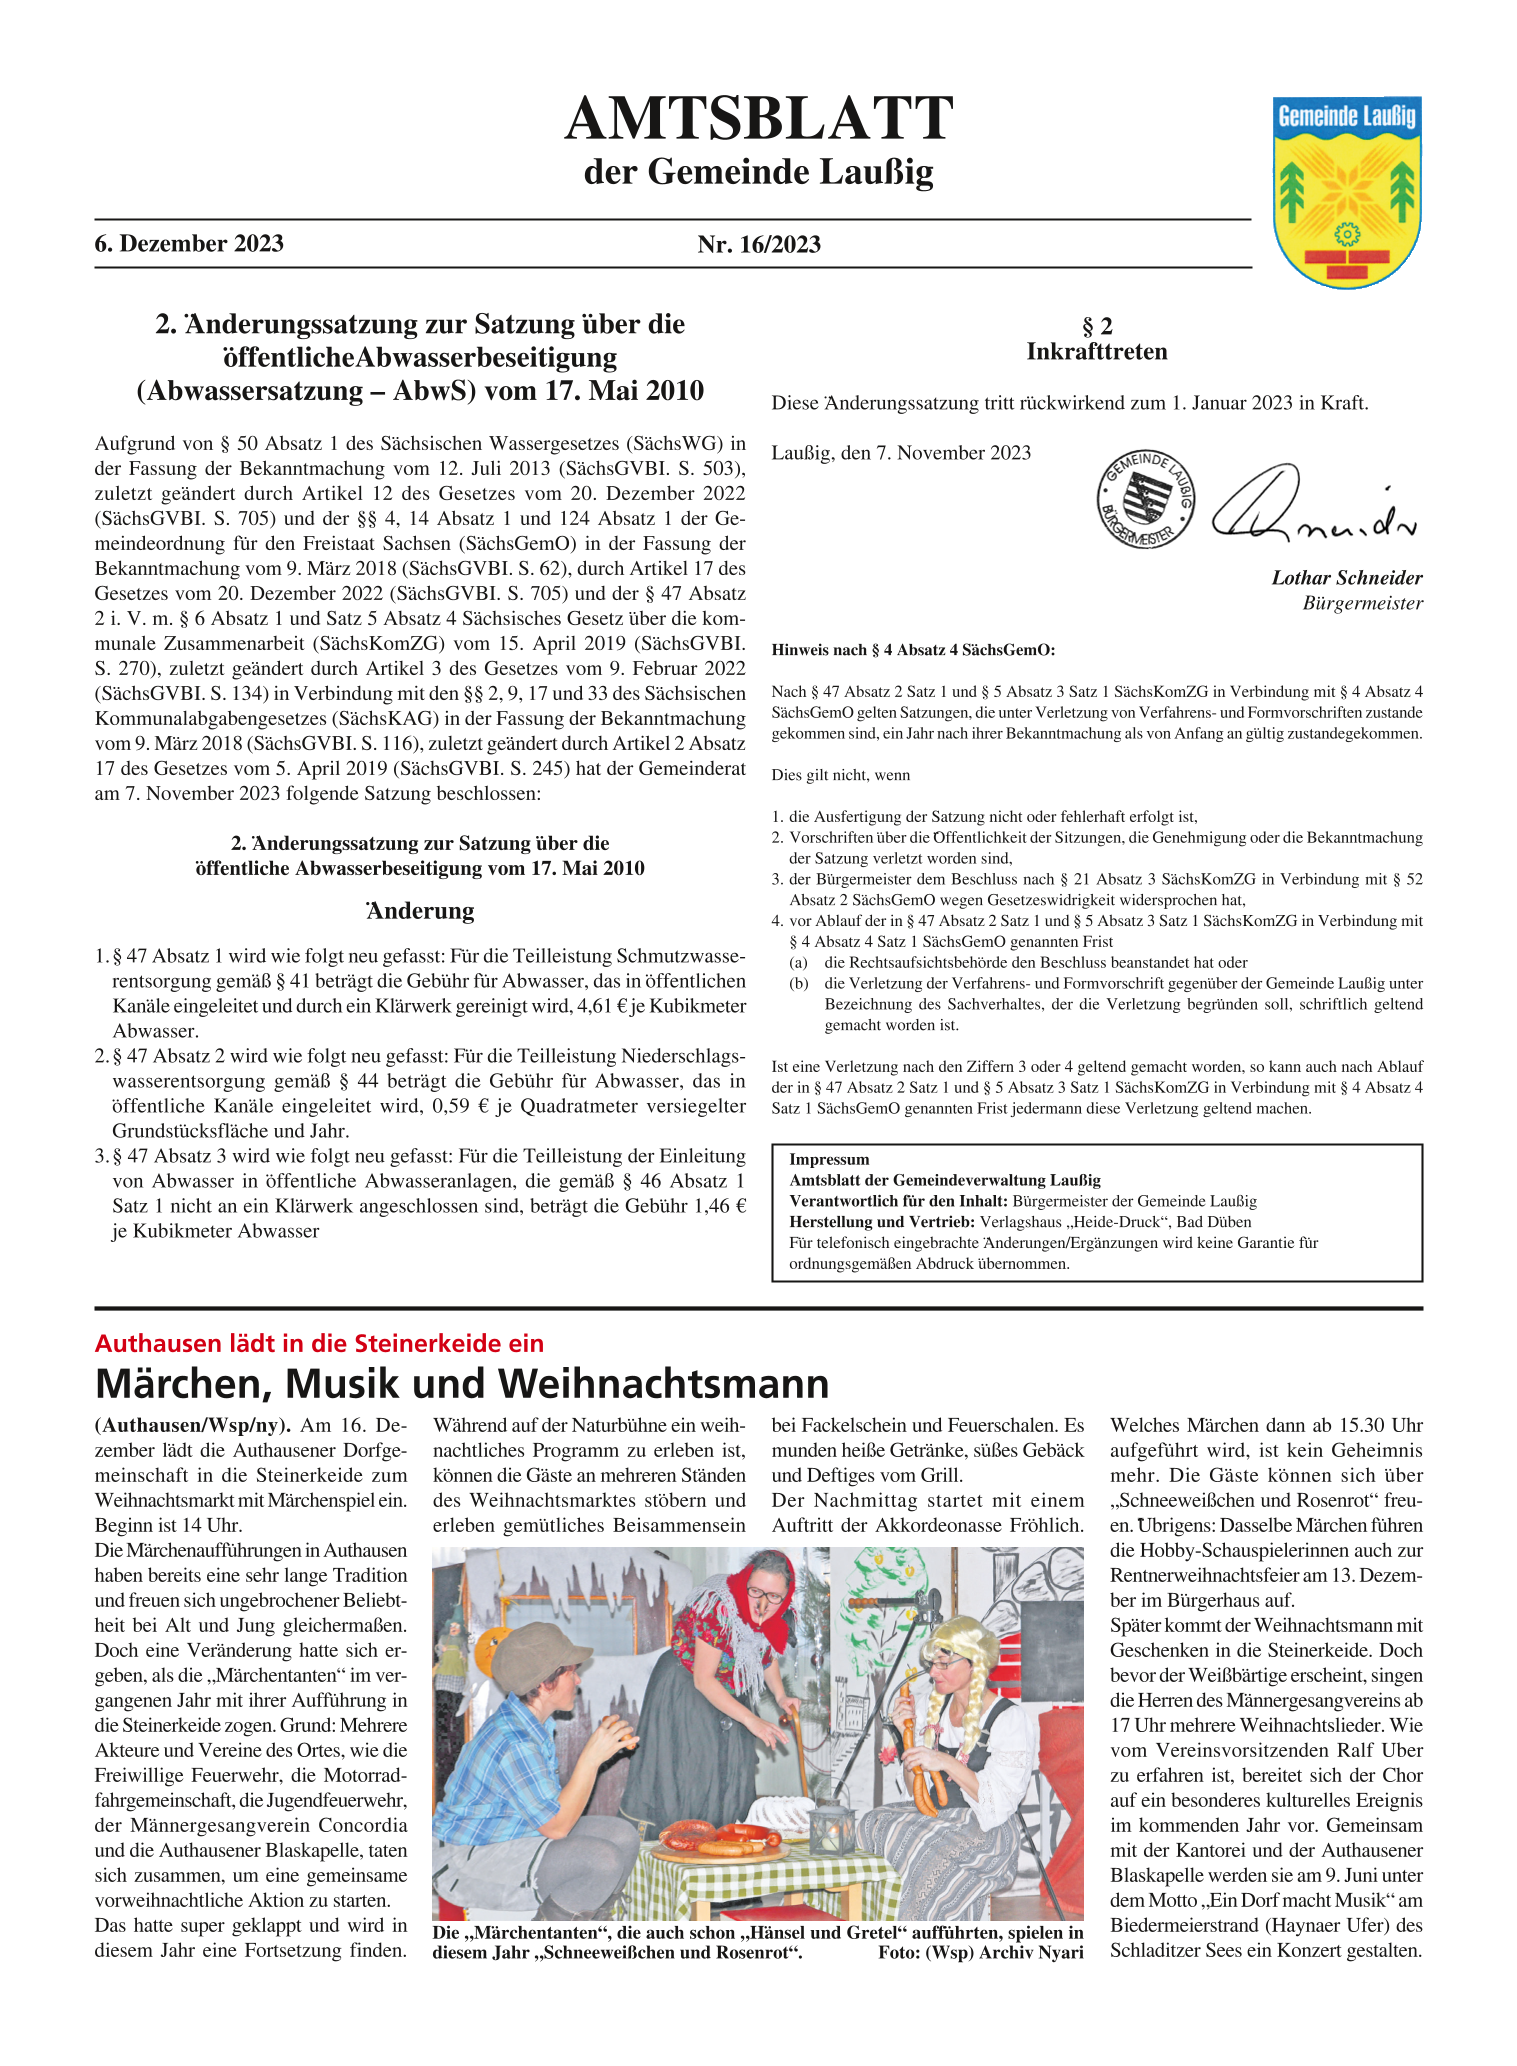 Amtsblatt Nr. 16/2023 vom 06.12.2023